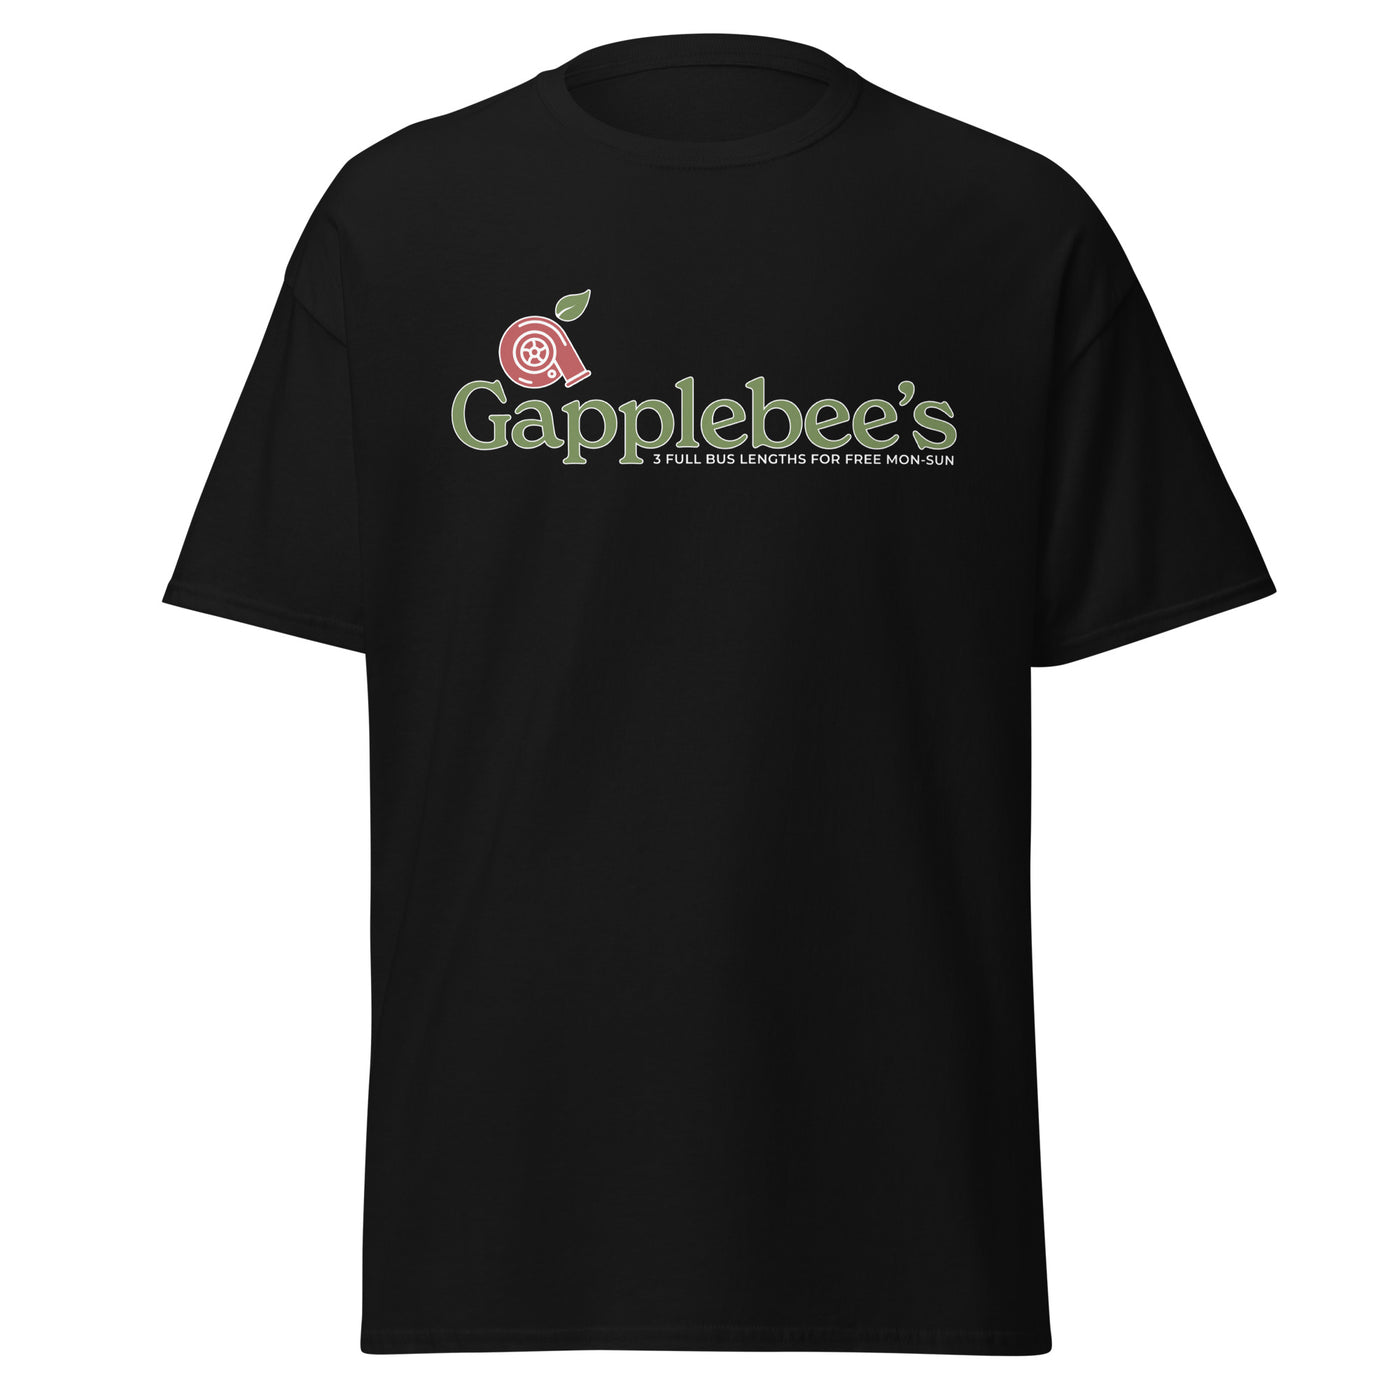 Gapplebee's Tee